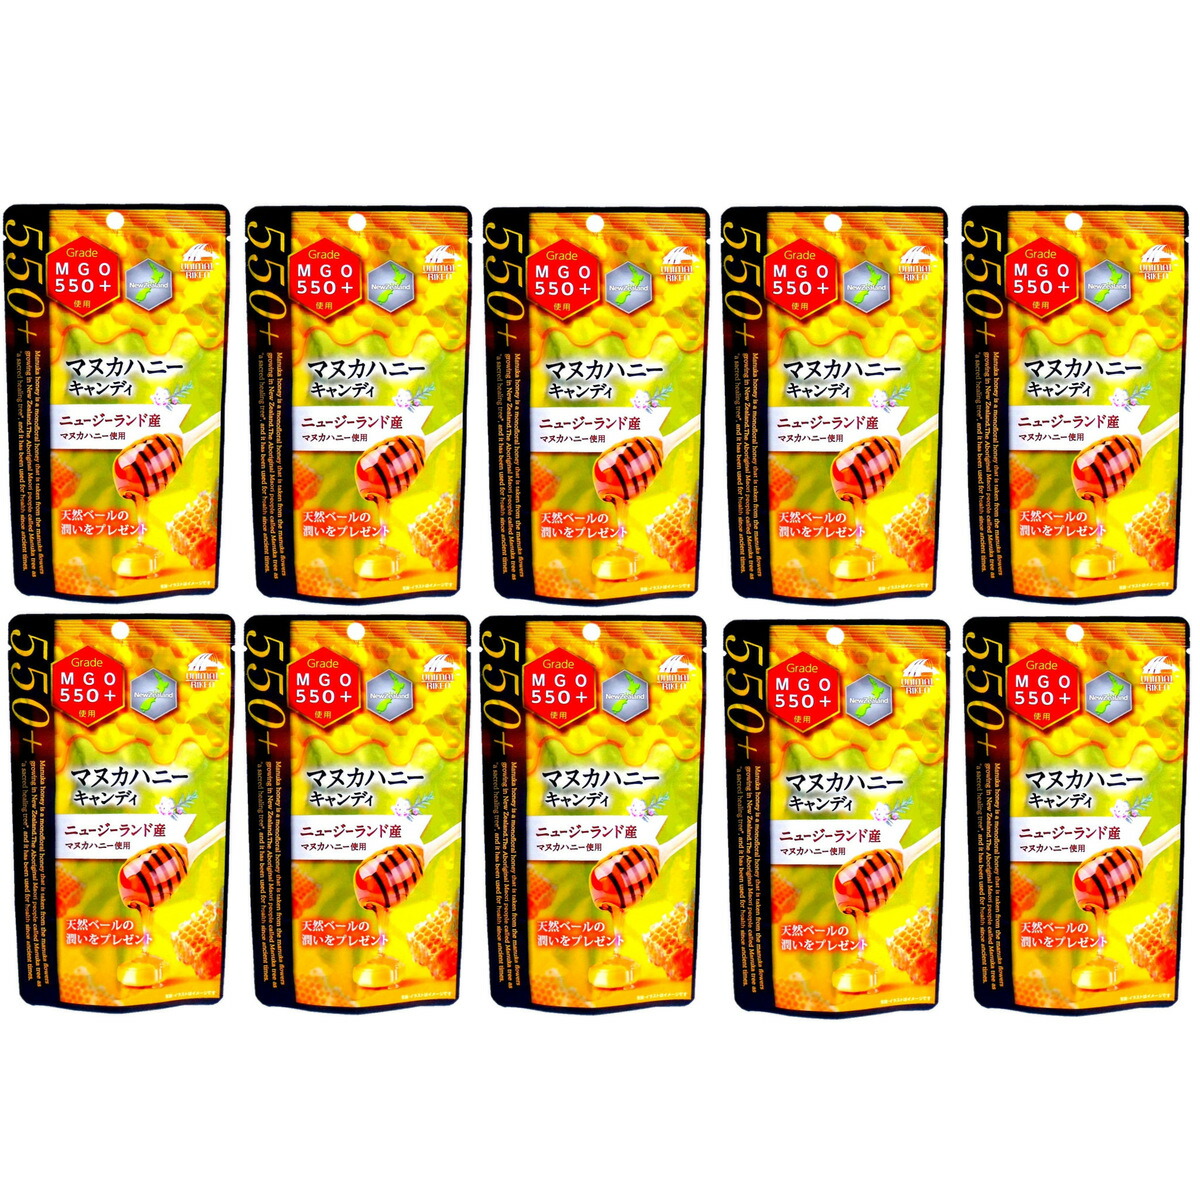 マヌカハニー キャンディー ＭＧＯ550＋ 10粒入×10袋セット ニュージーランド産 ユニマットリケン 蜂蜜 のど飴 送料無料